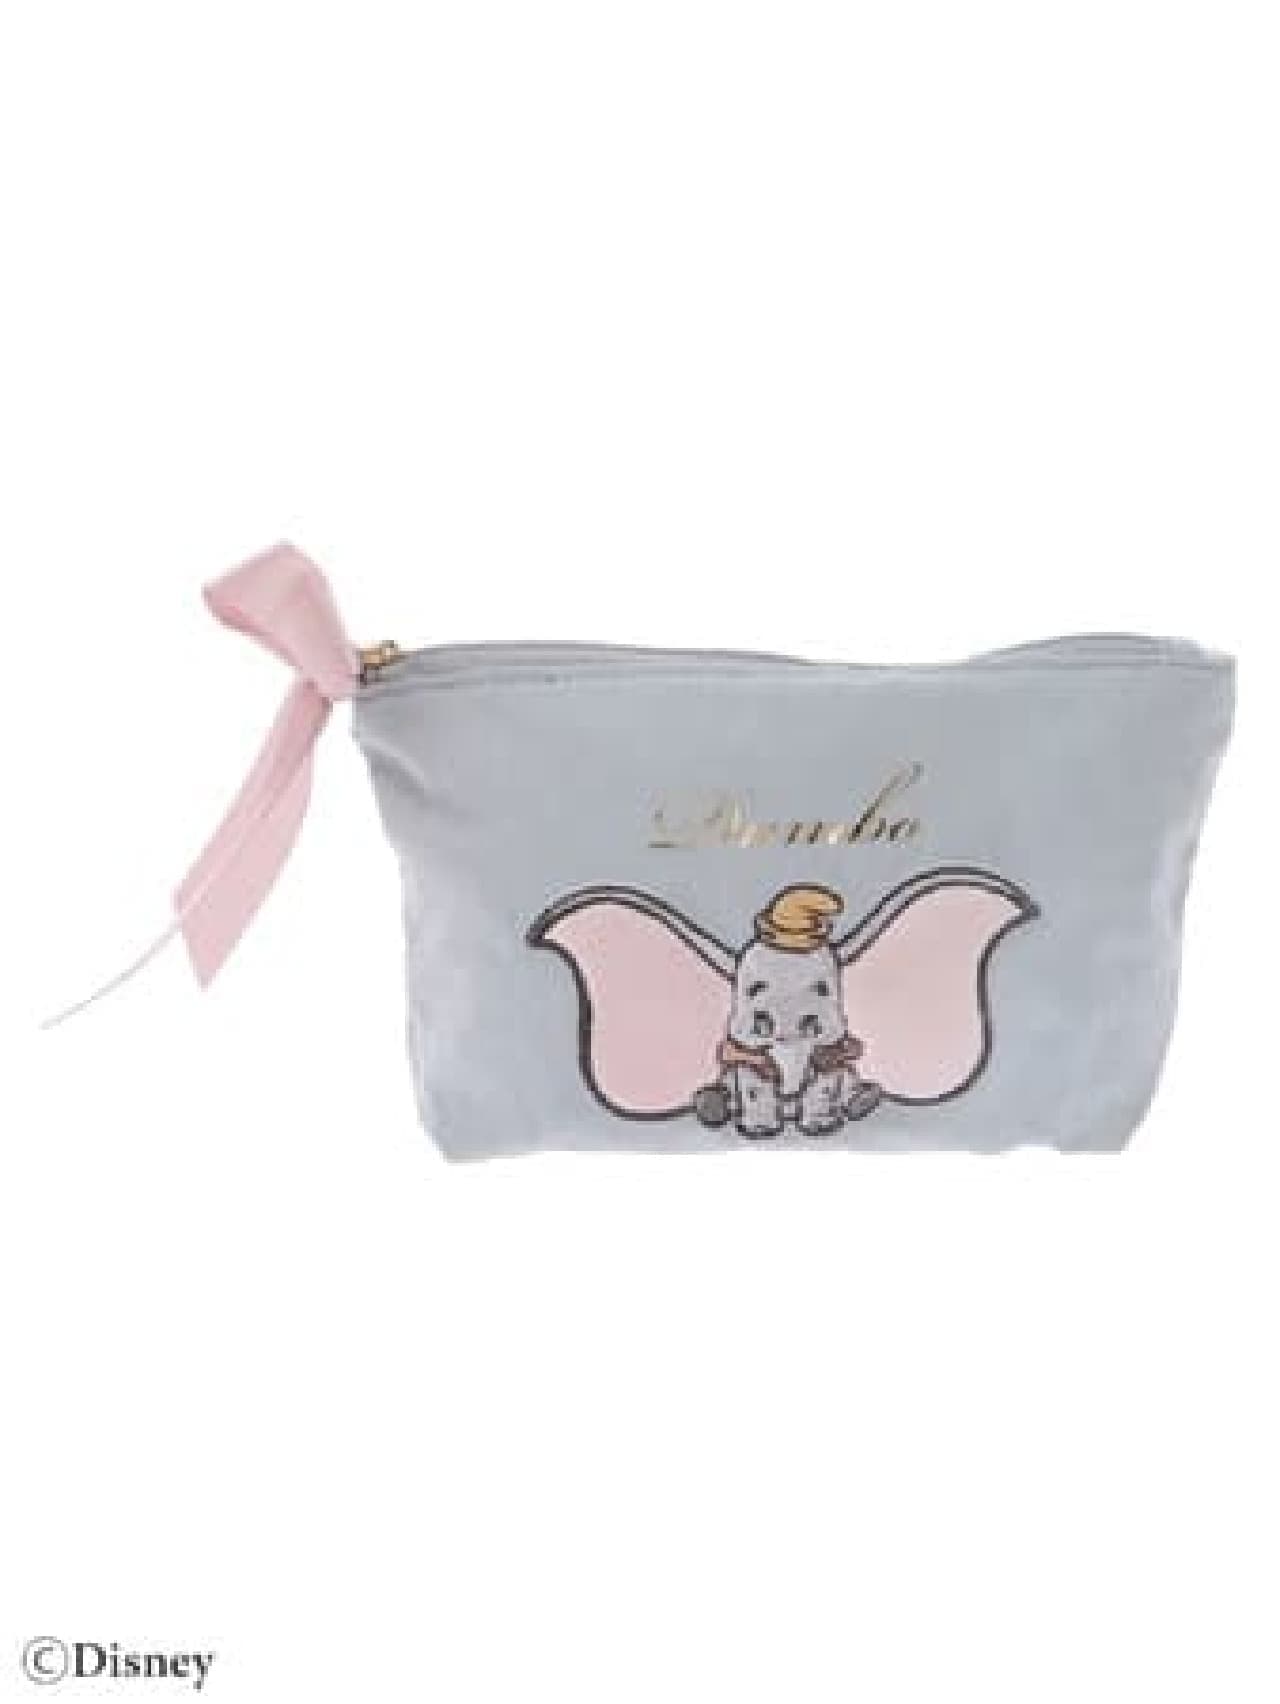 Maison de FLEUR "Dumbo" Collection --Feminine, dark-colored tote bags, pouches, etc.